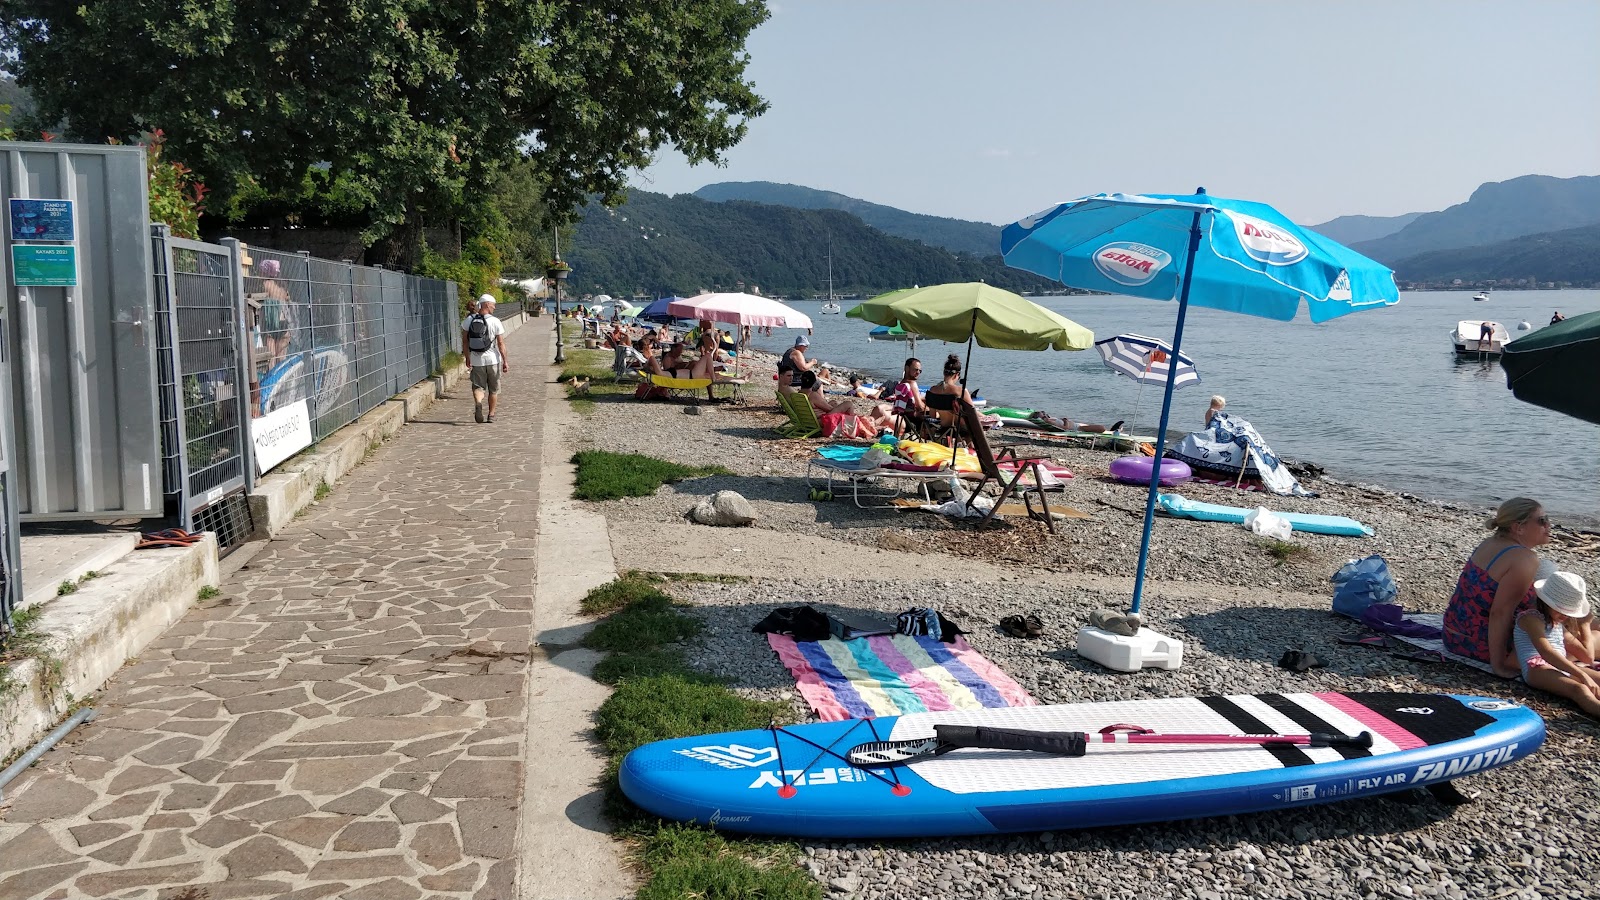 Foto av Spiaggia Pinzone - bra husdjursvänlig plats för semester